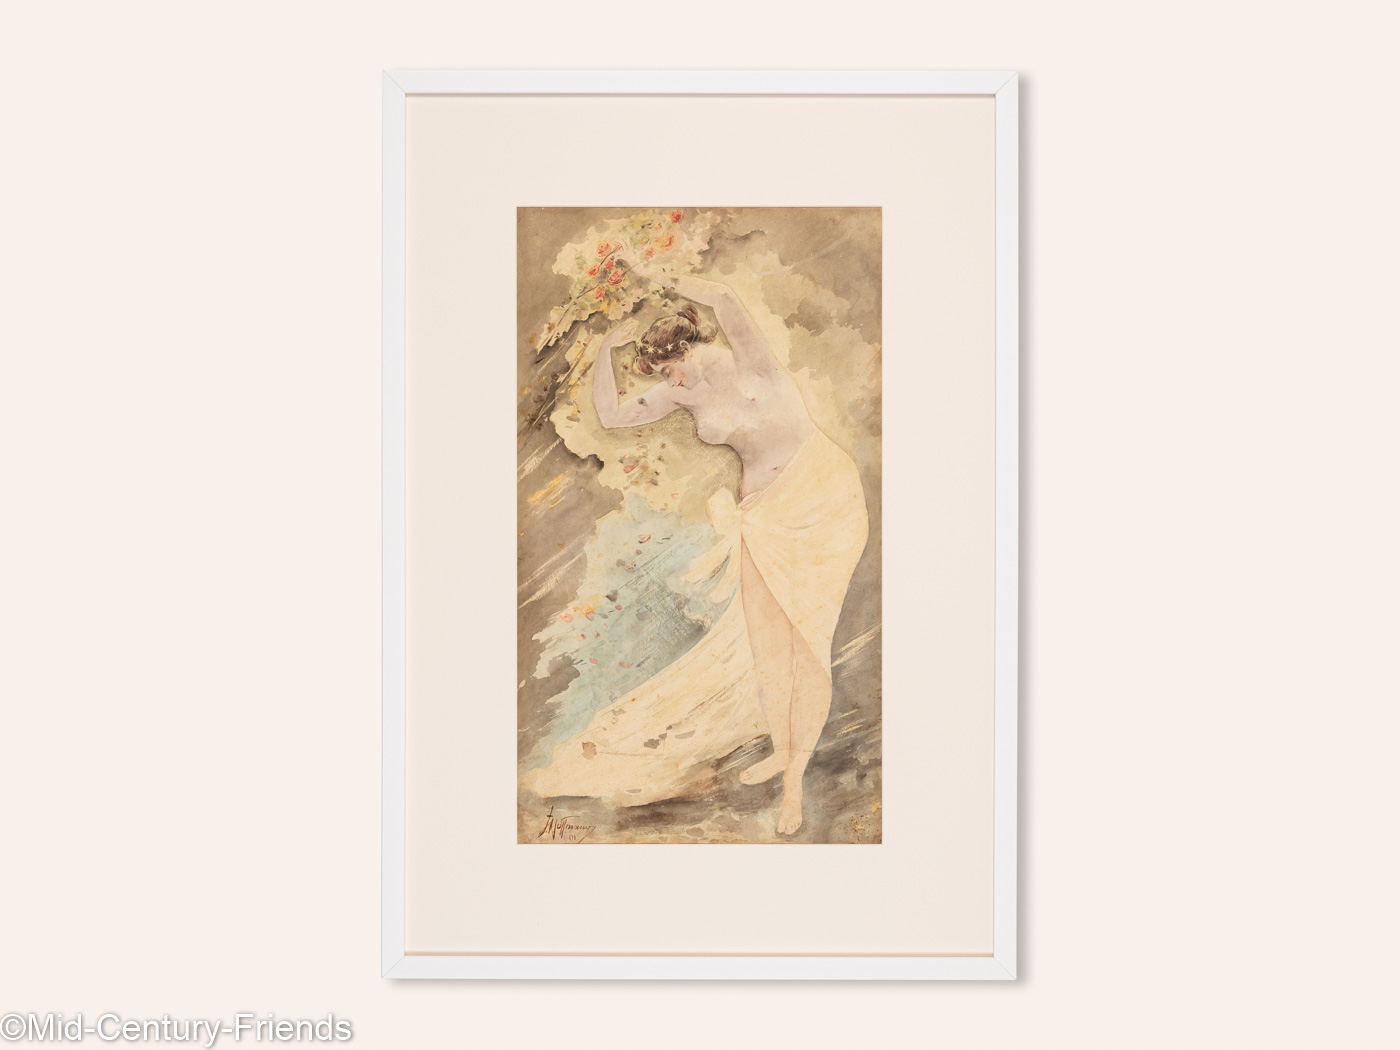 Stehender Frauenakt aus dem Jahr 1901, Aquarell auf Papier, 58 x 83 cm